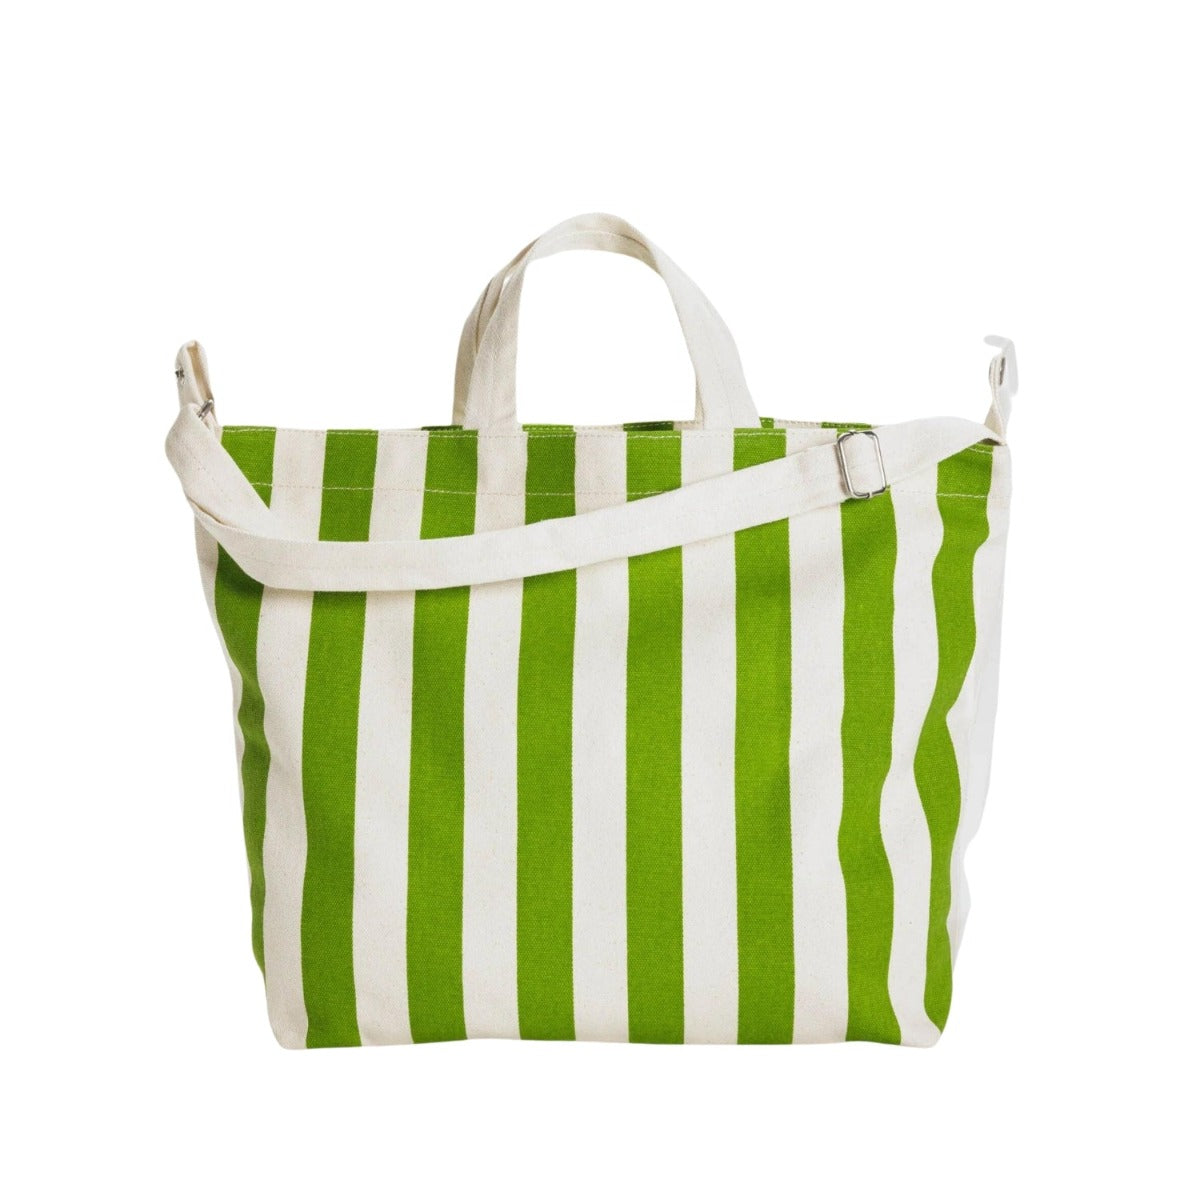 Baggu Horizontal Zip Duck Bag in Green Awning Stripe